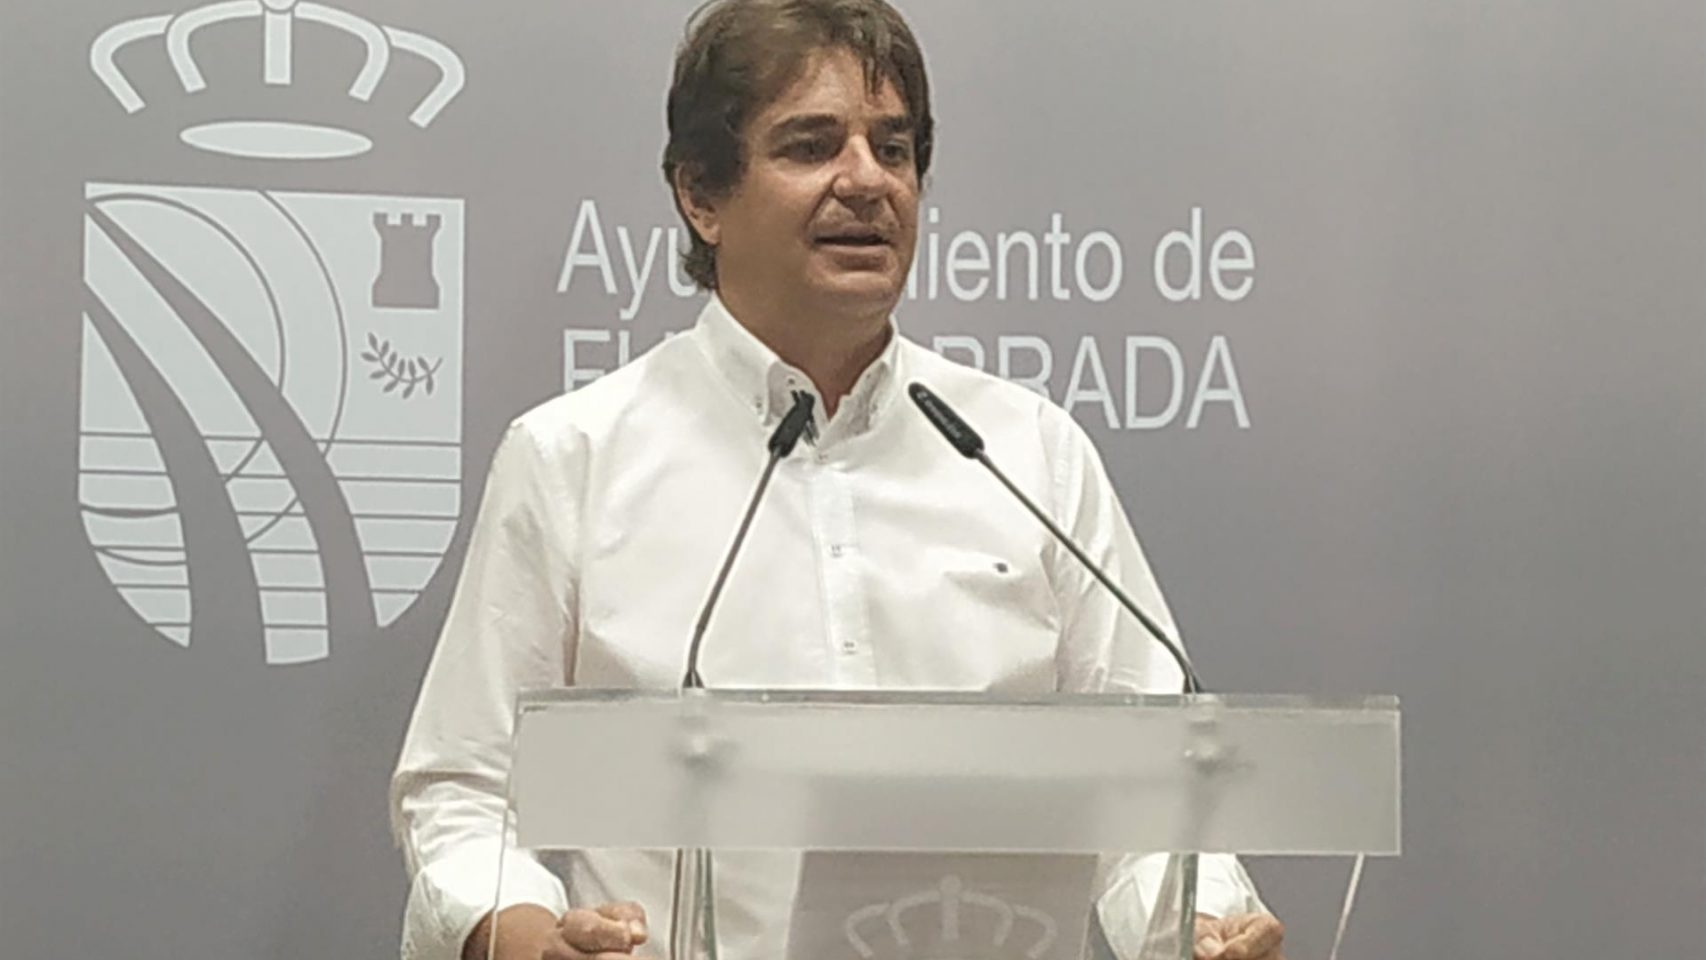 El alcalde de Fuenlabrada, Javier Ayala, durante una rueda de prensa